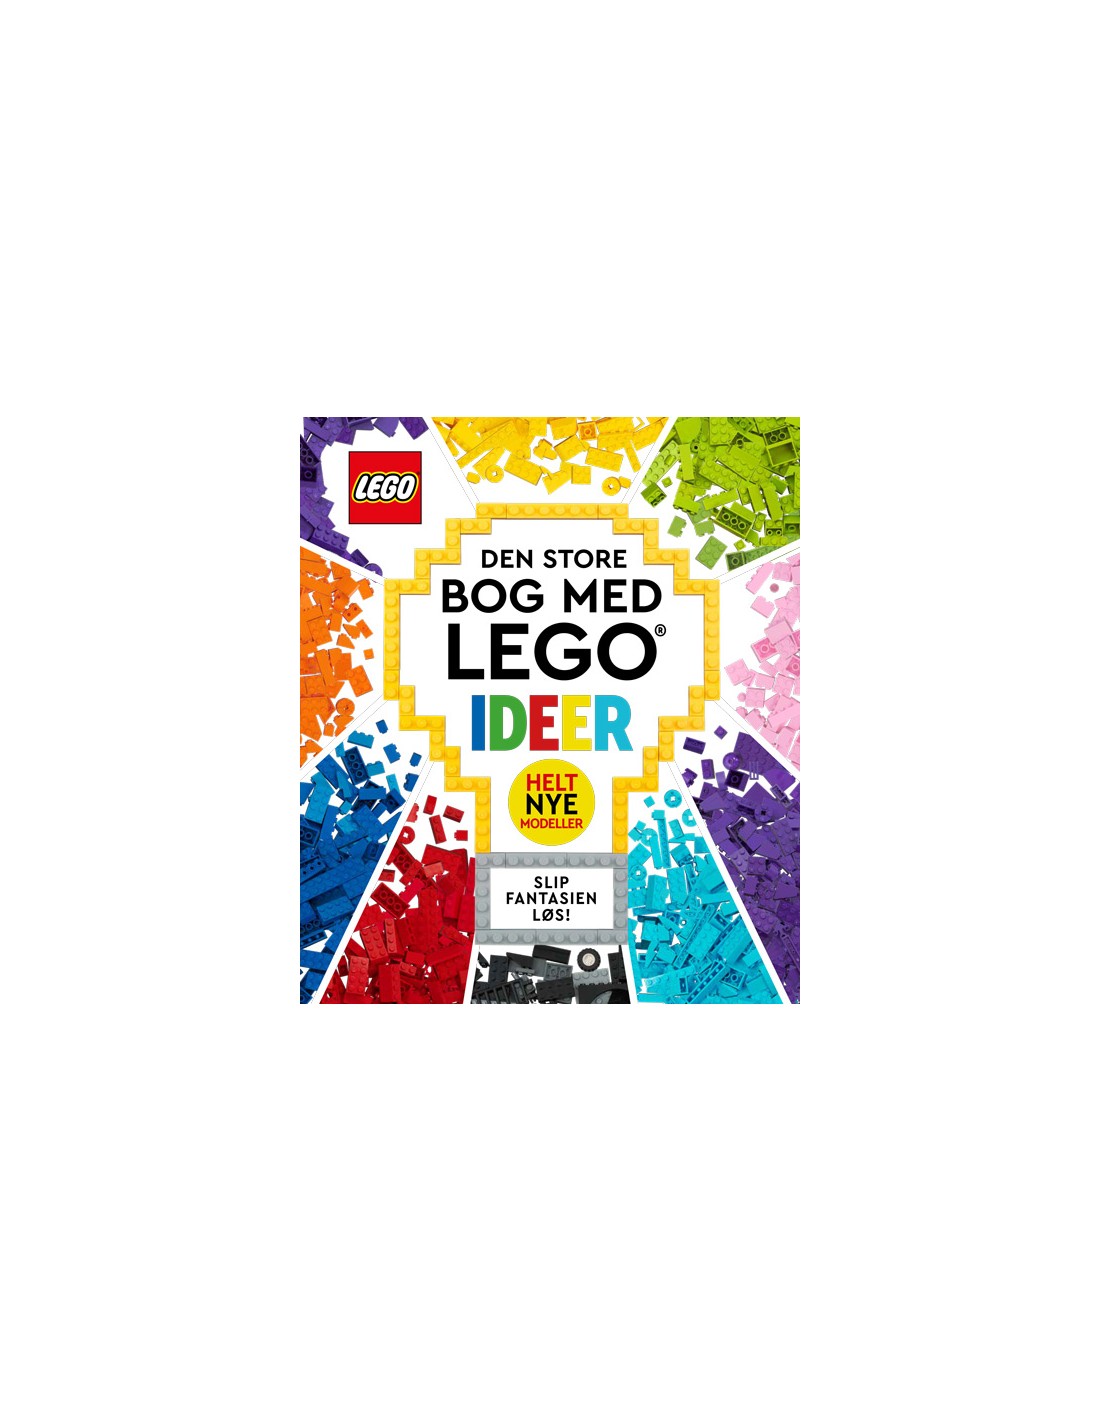 Den store med LEGO ideer 9788741522937 skrevet LEGO